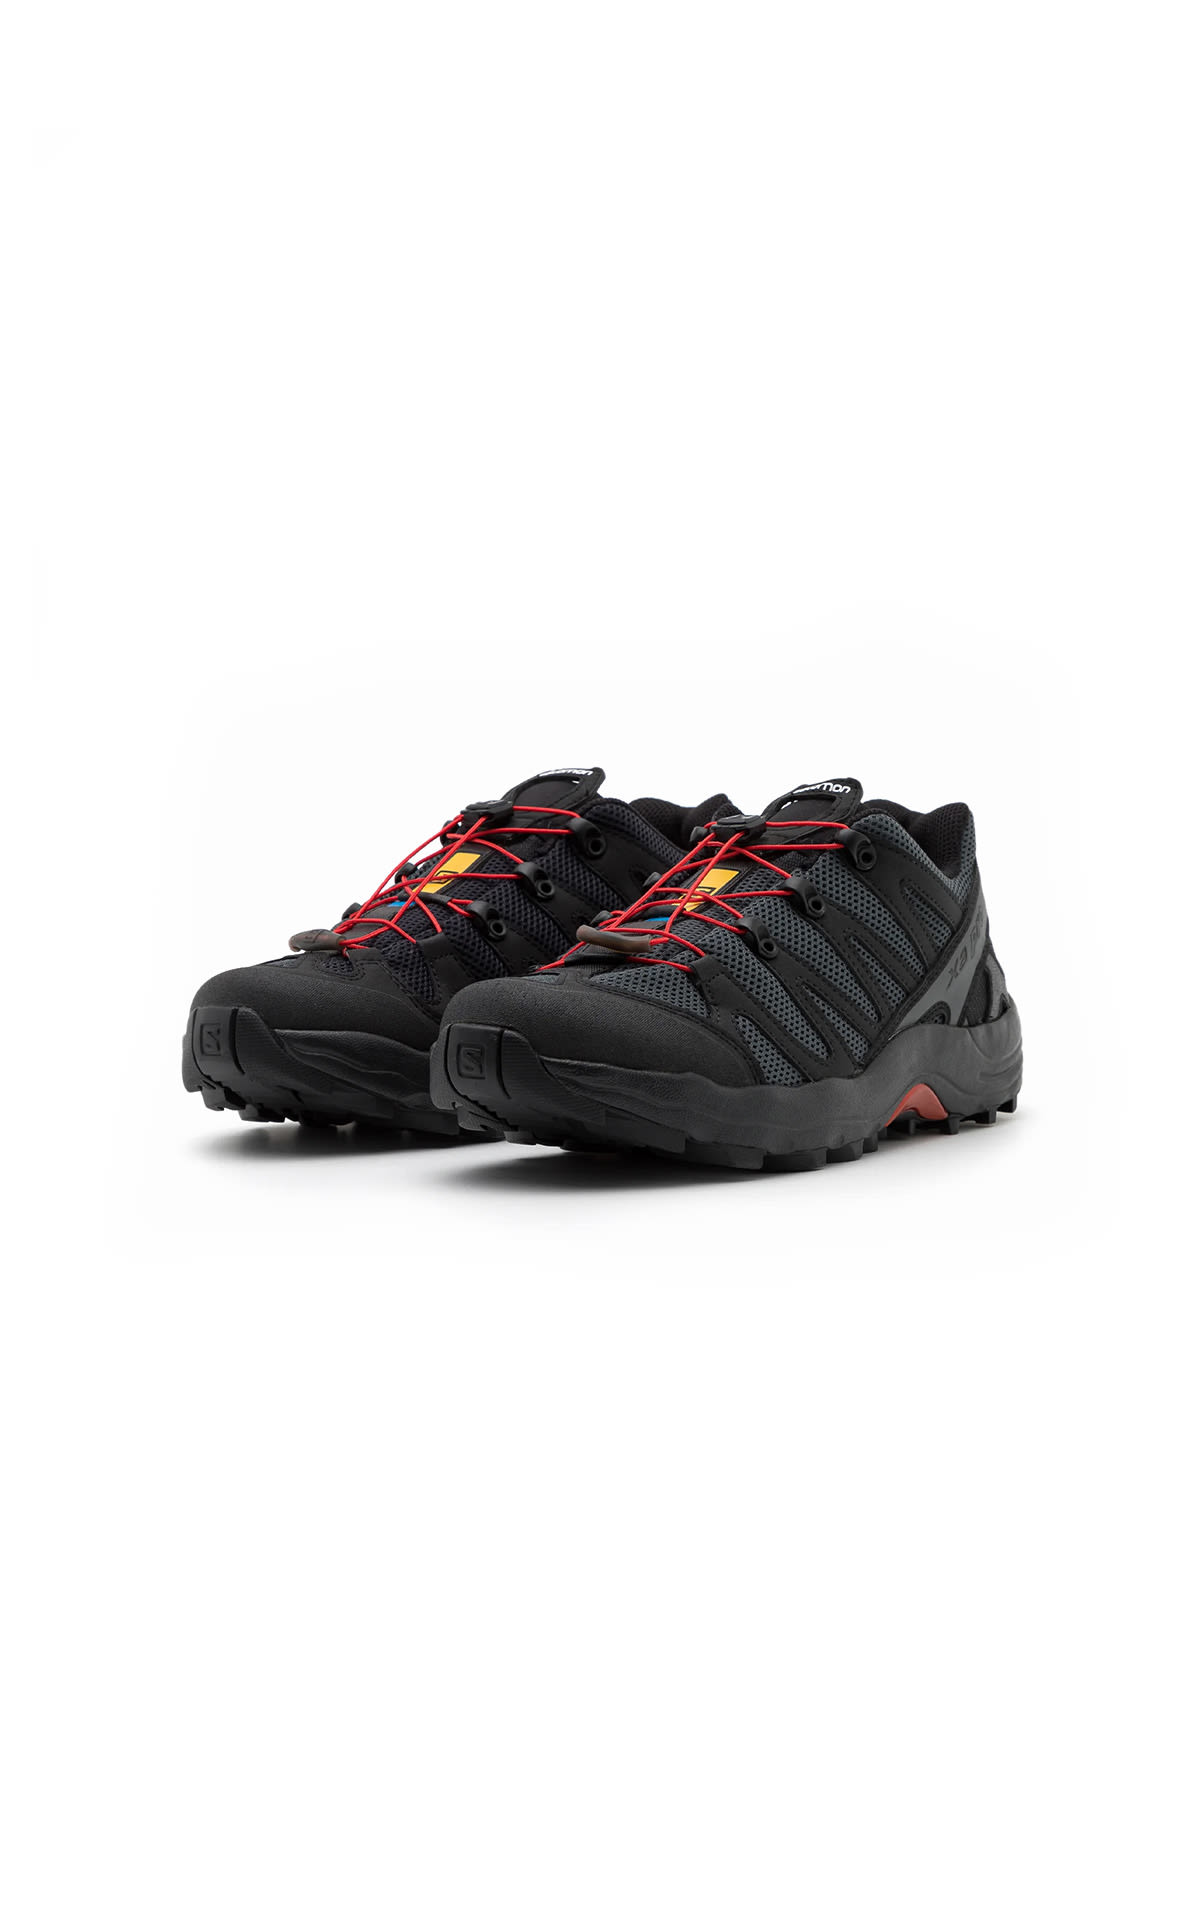 Sneakers XA PRO 1 BLACK Salomon